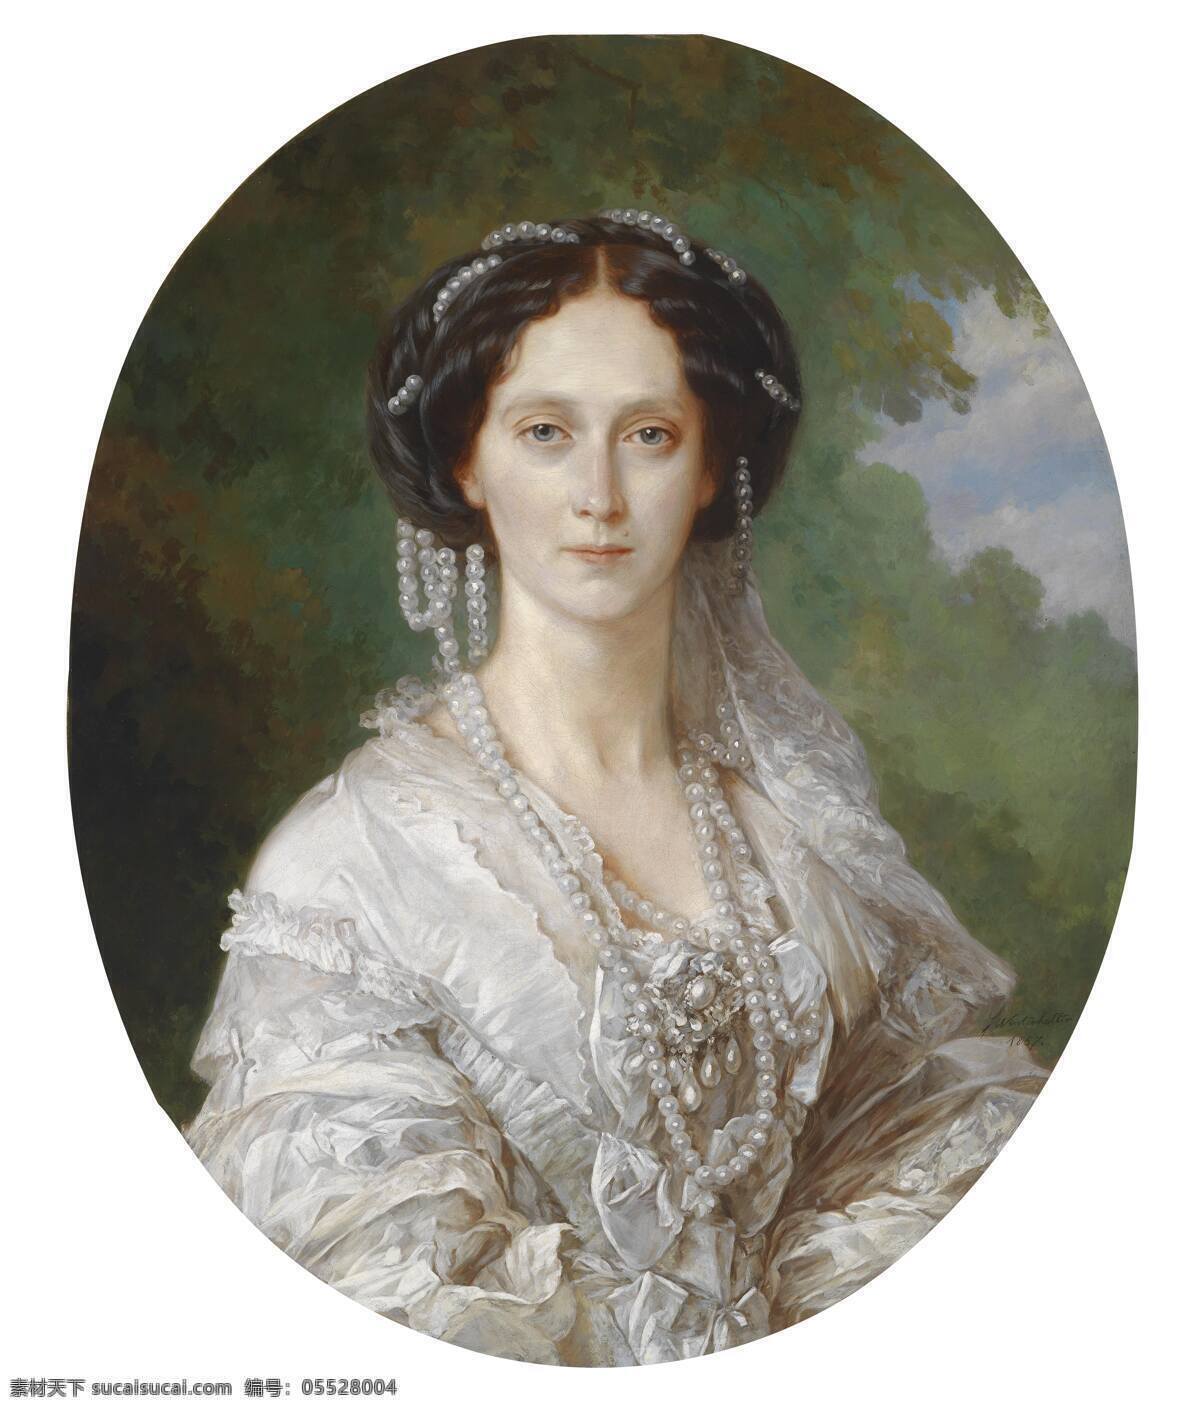 亚历山德拉 皇后 亚历山大 二世 妻 温特 哈尔特 作品 人物油画 古典肖像油画 白色